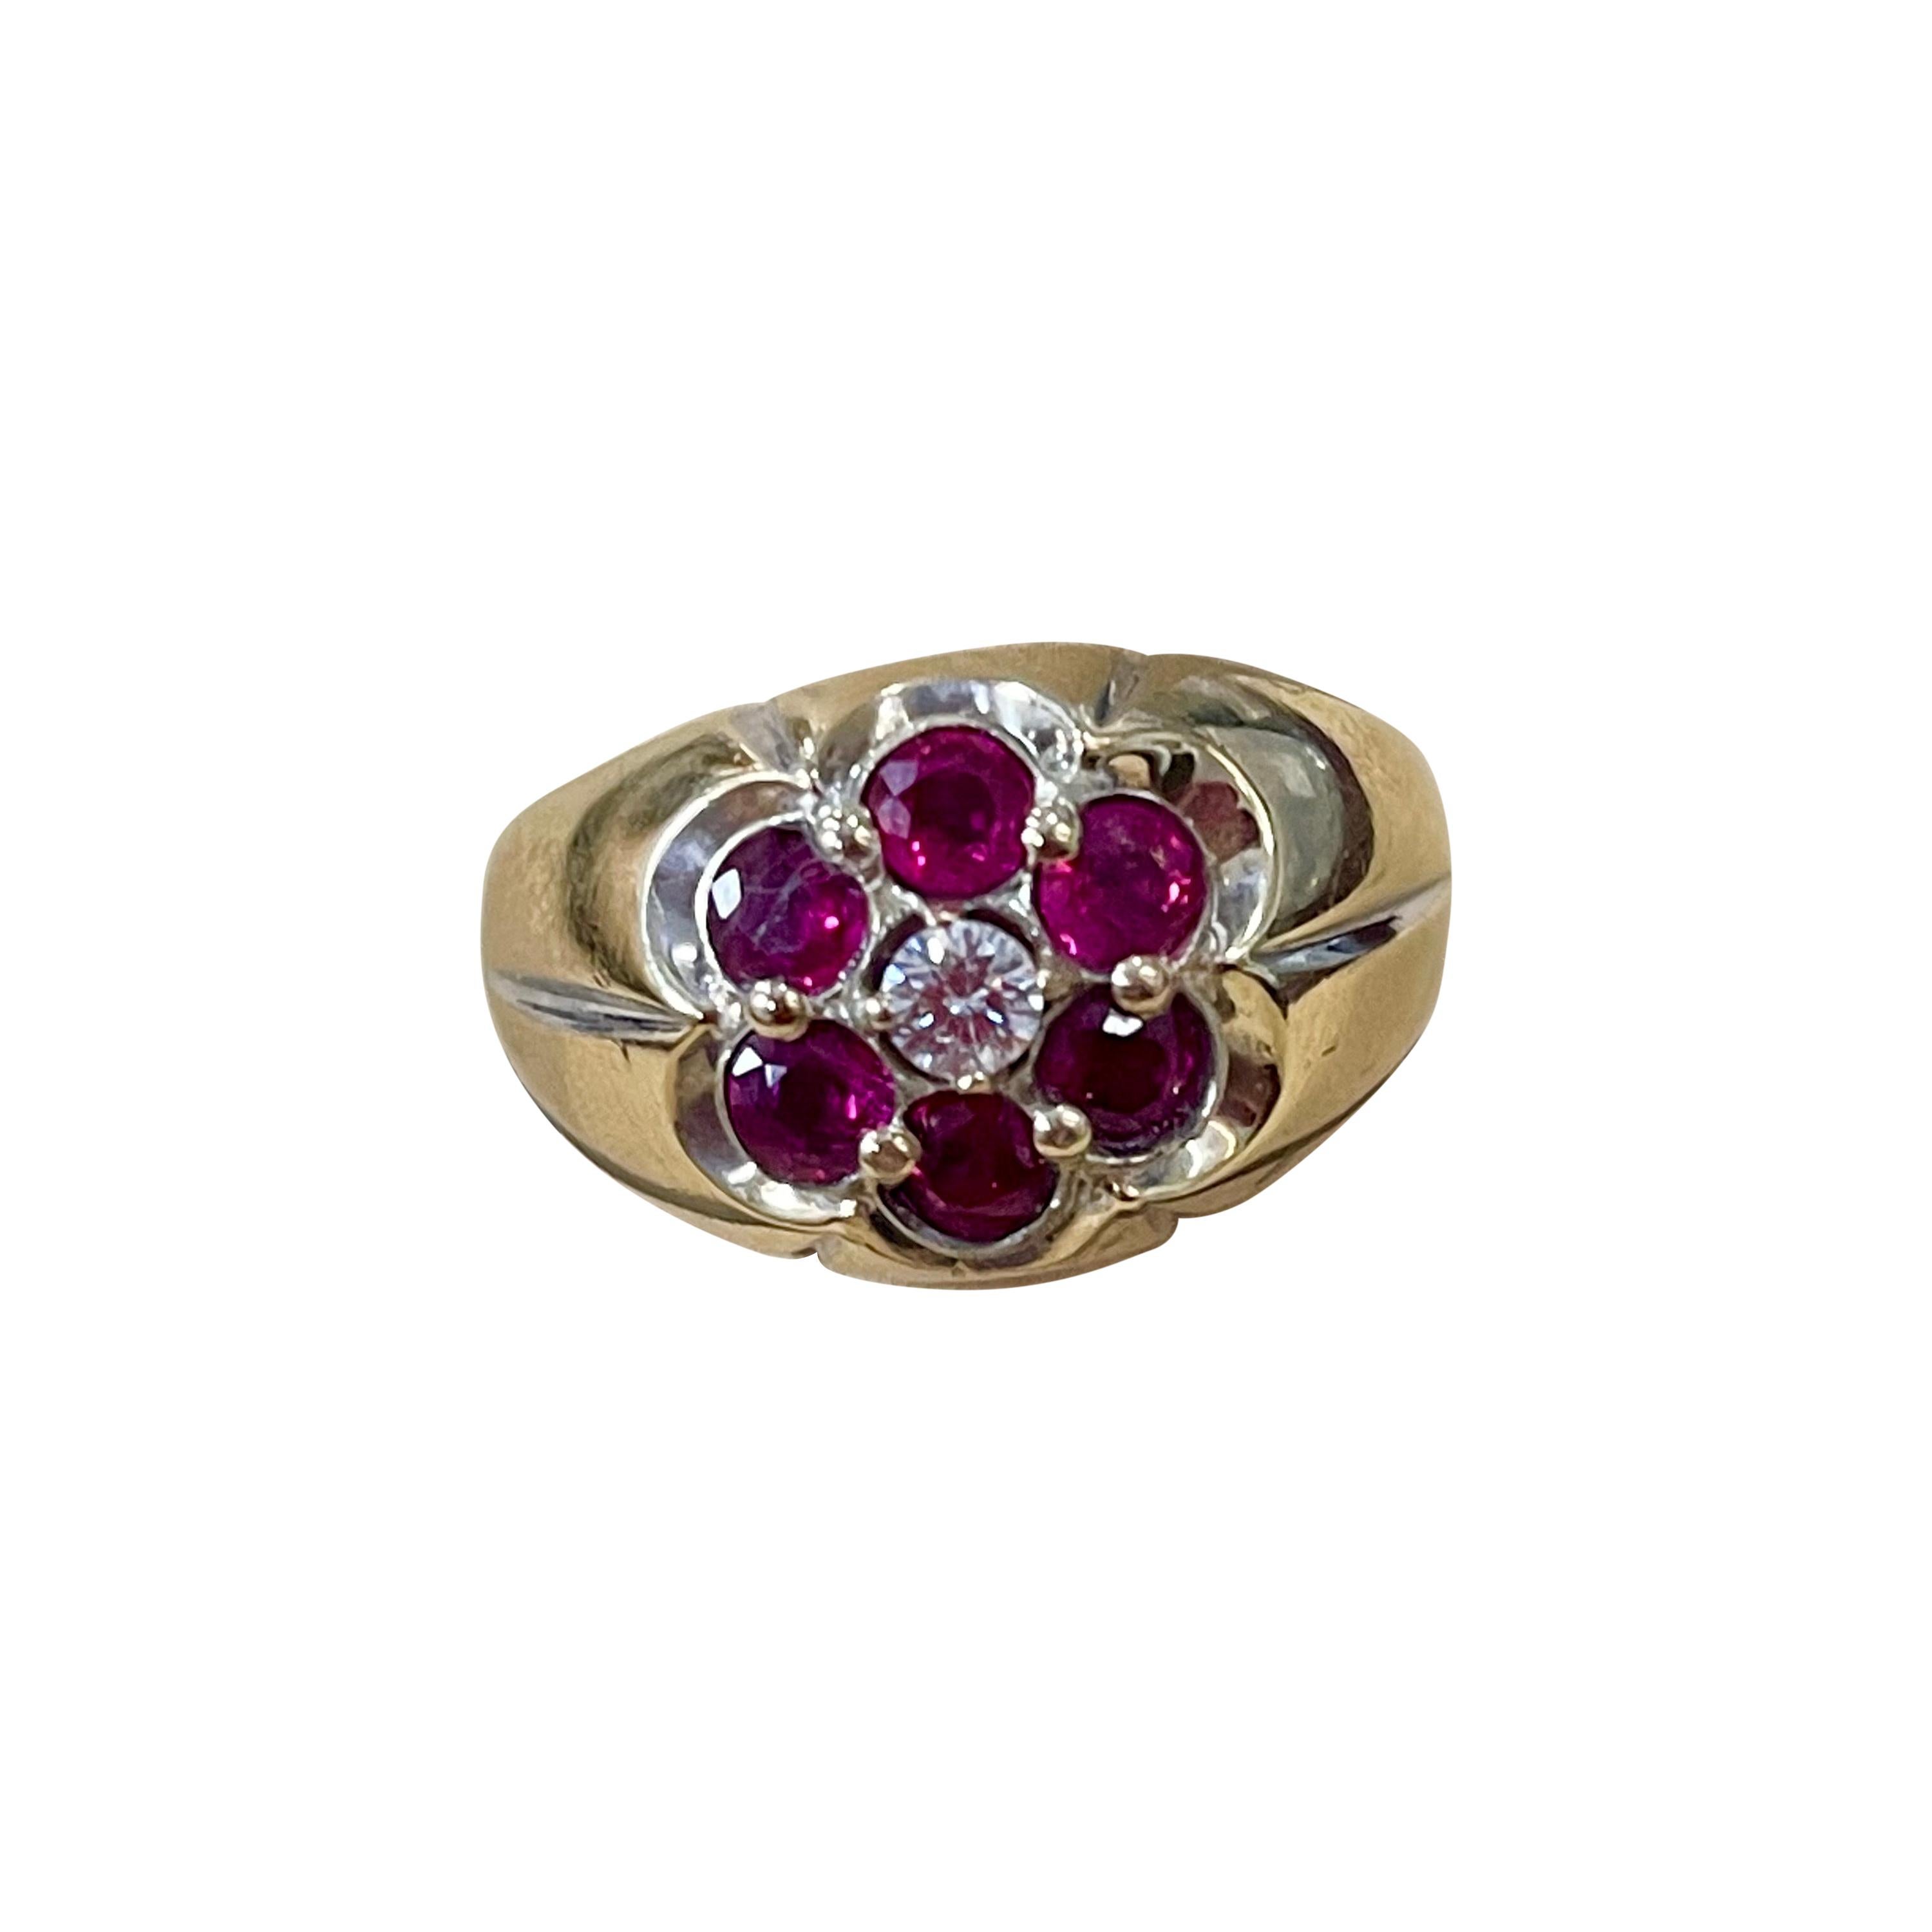 1.0 Carat, 7 Stone Ruby & Diamond Traditional Men's Ring 14 Karat Y Gold Ring